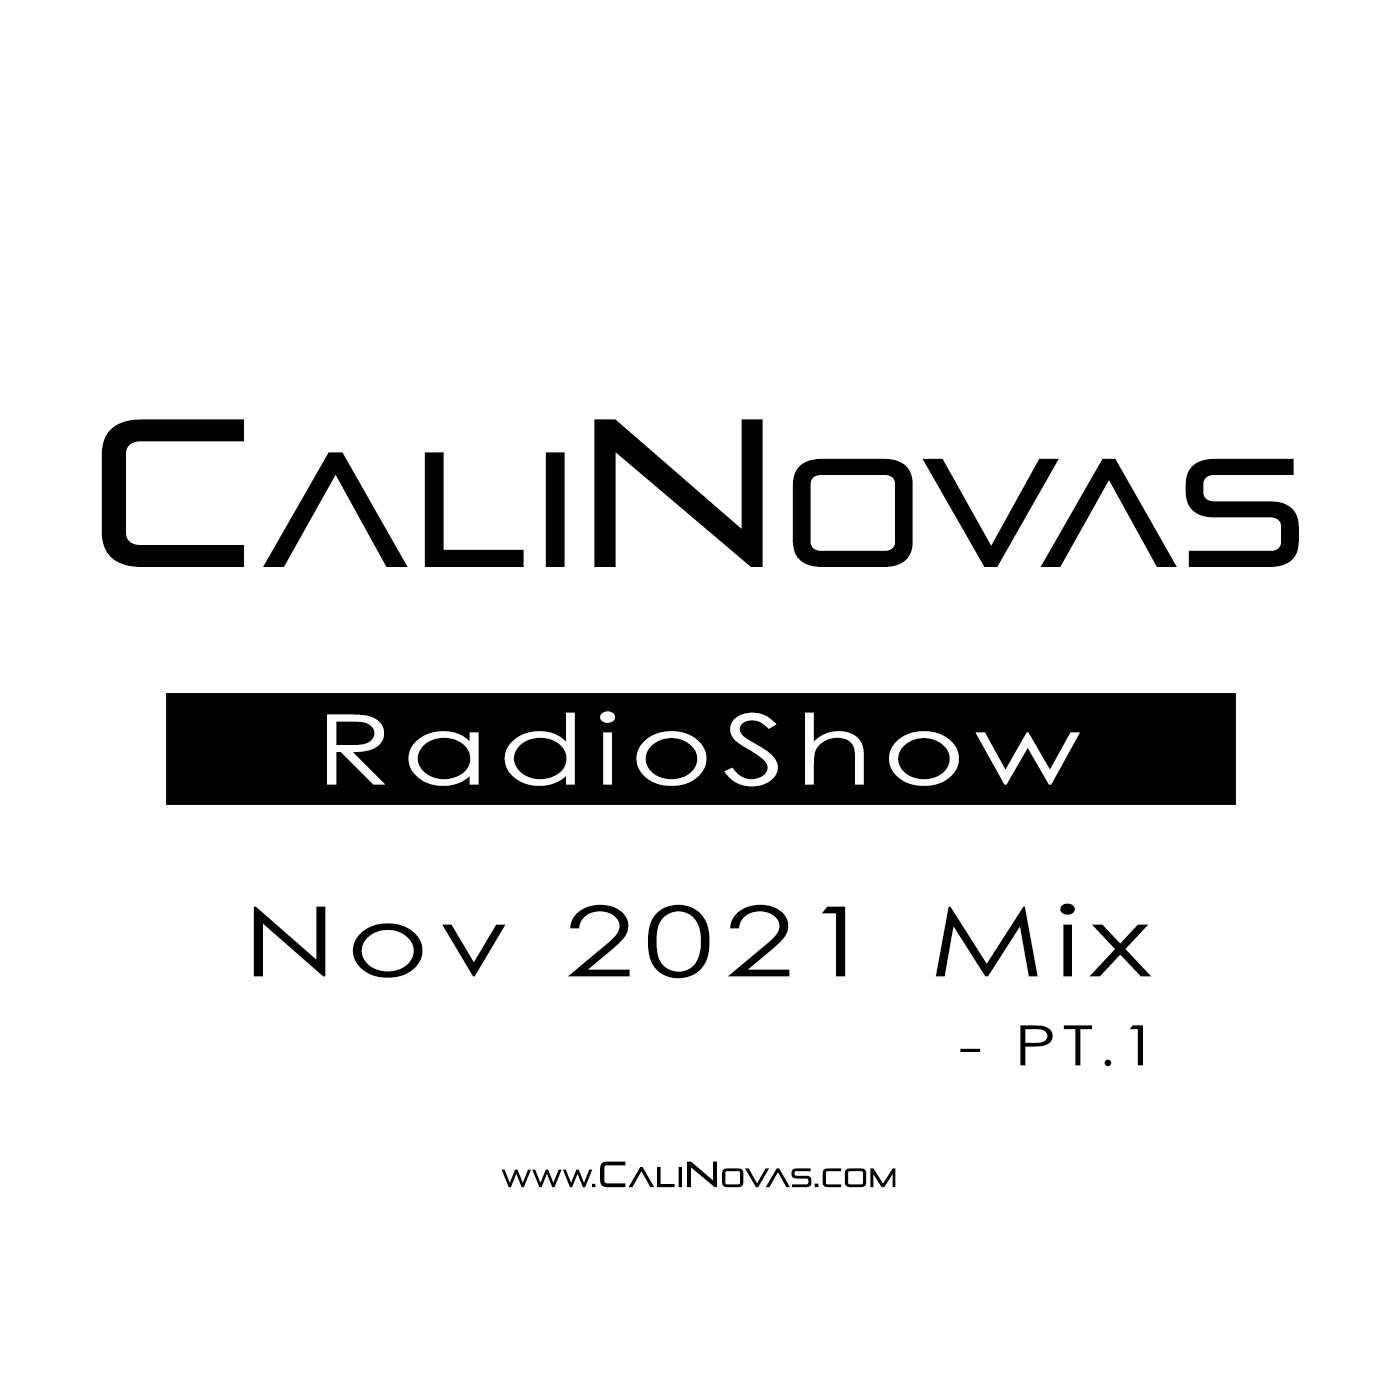 CaliNovas Radio Show - November 2021 Mix, Pt. 1